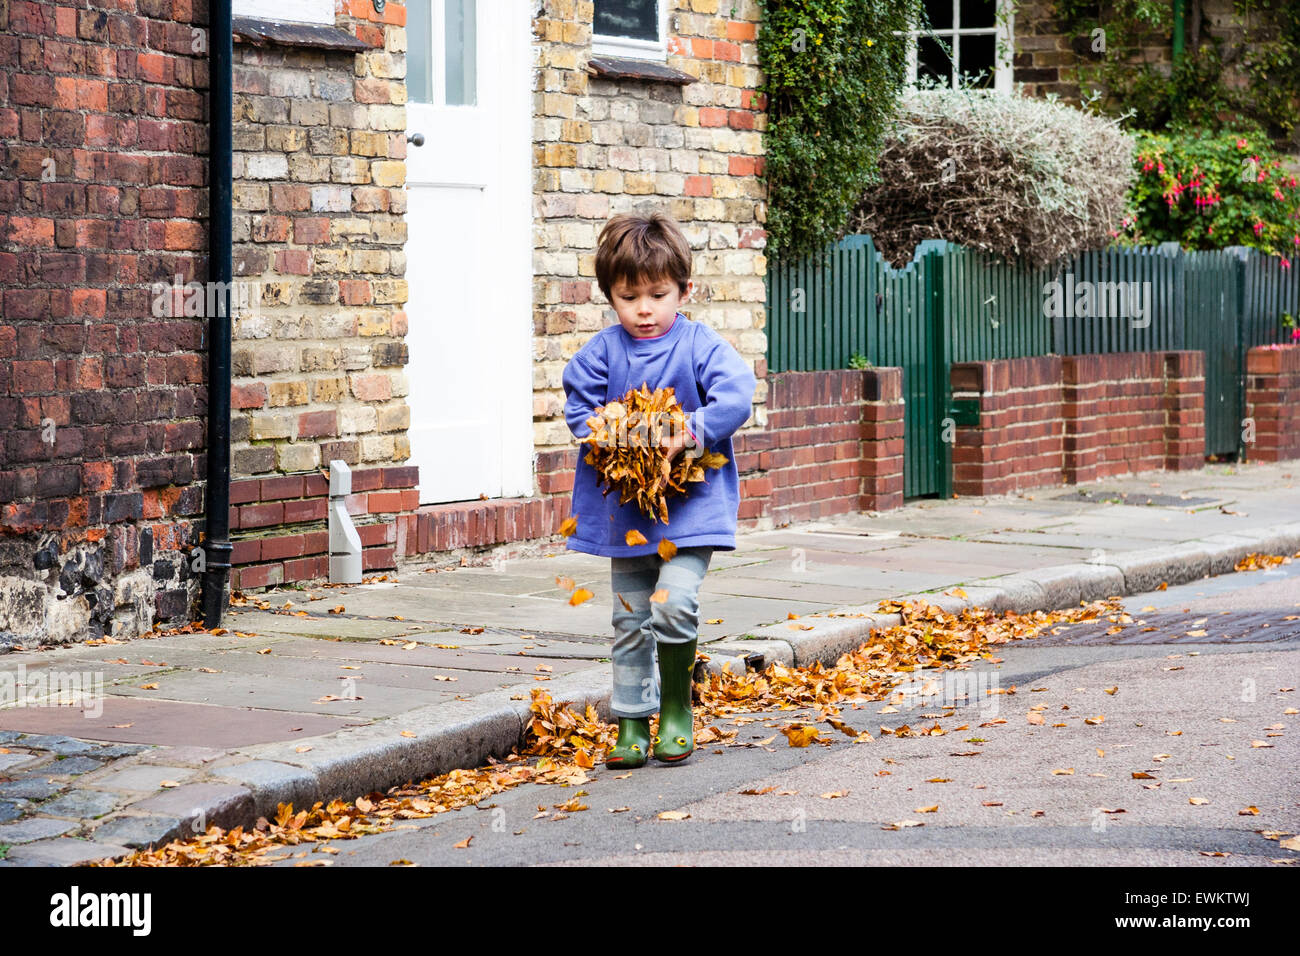 Caucasien enfant, garçon, 5-6 ans, marchant le long d'une rue verdoyante vers viewer en transportant un gros tas de feuilles d'automne brun dans ses mains. Banque D'Images